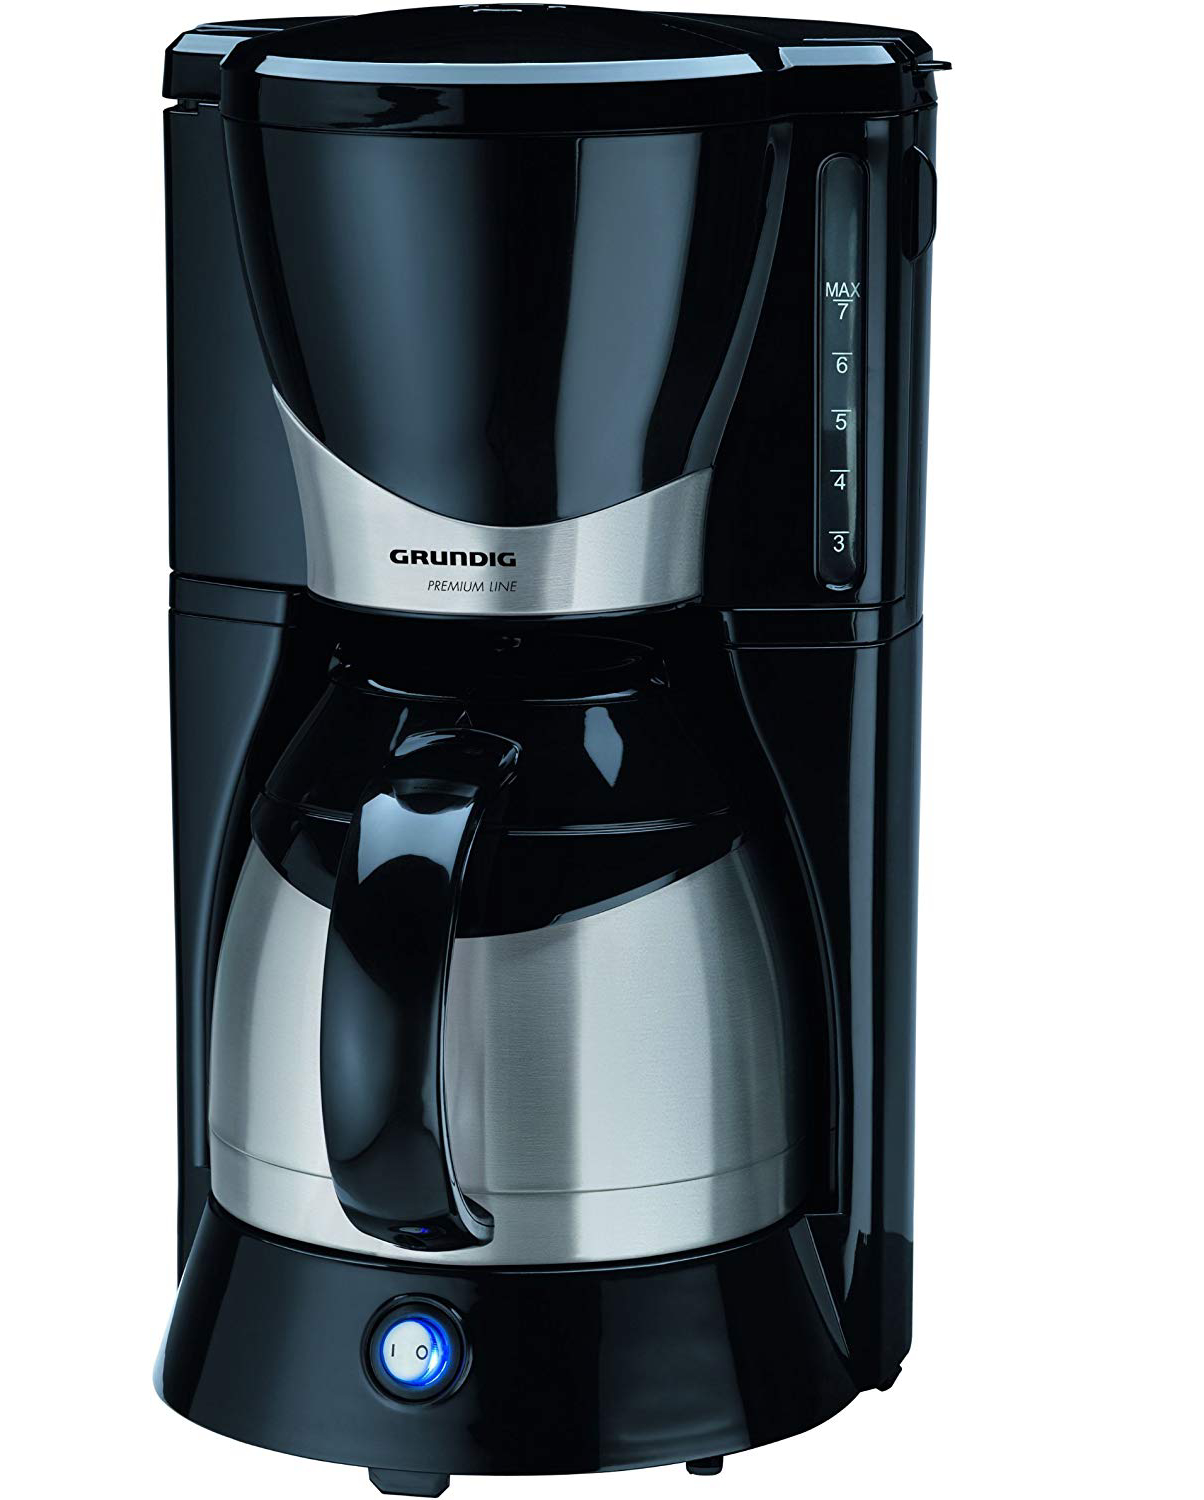  Grundig Filtre Kahve Makineleri ile Kahve Yaparken Nelere Dikkat Edilmesi Gerekenler? 